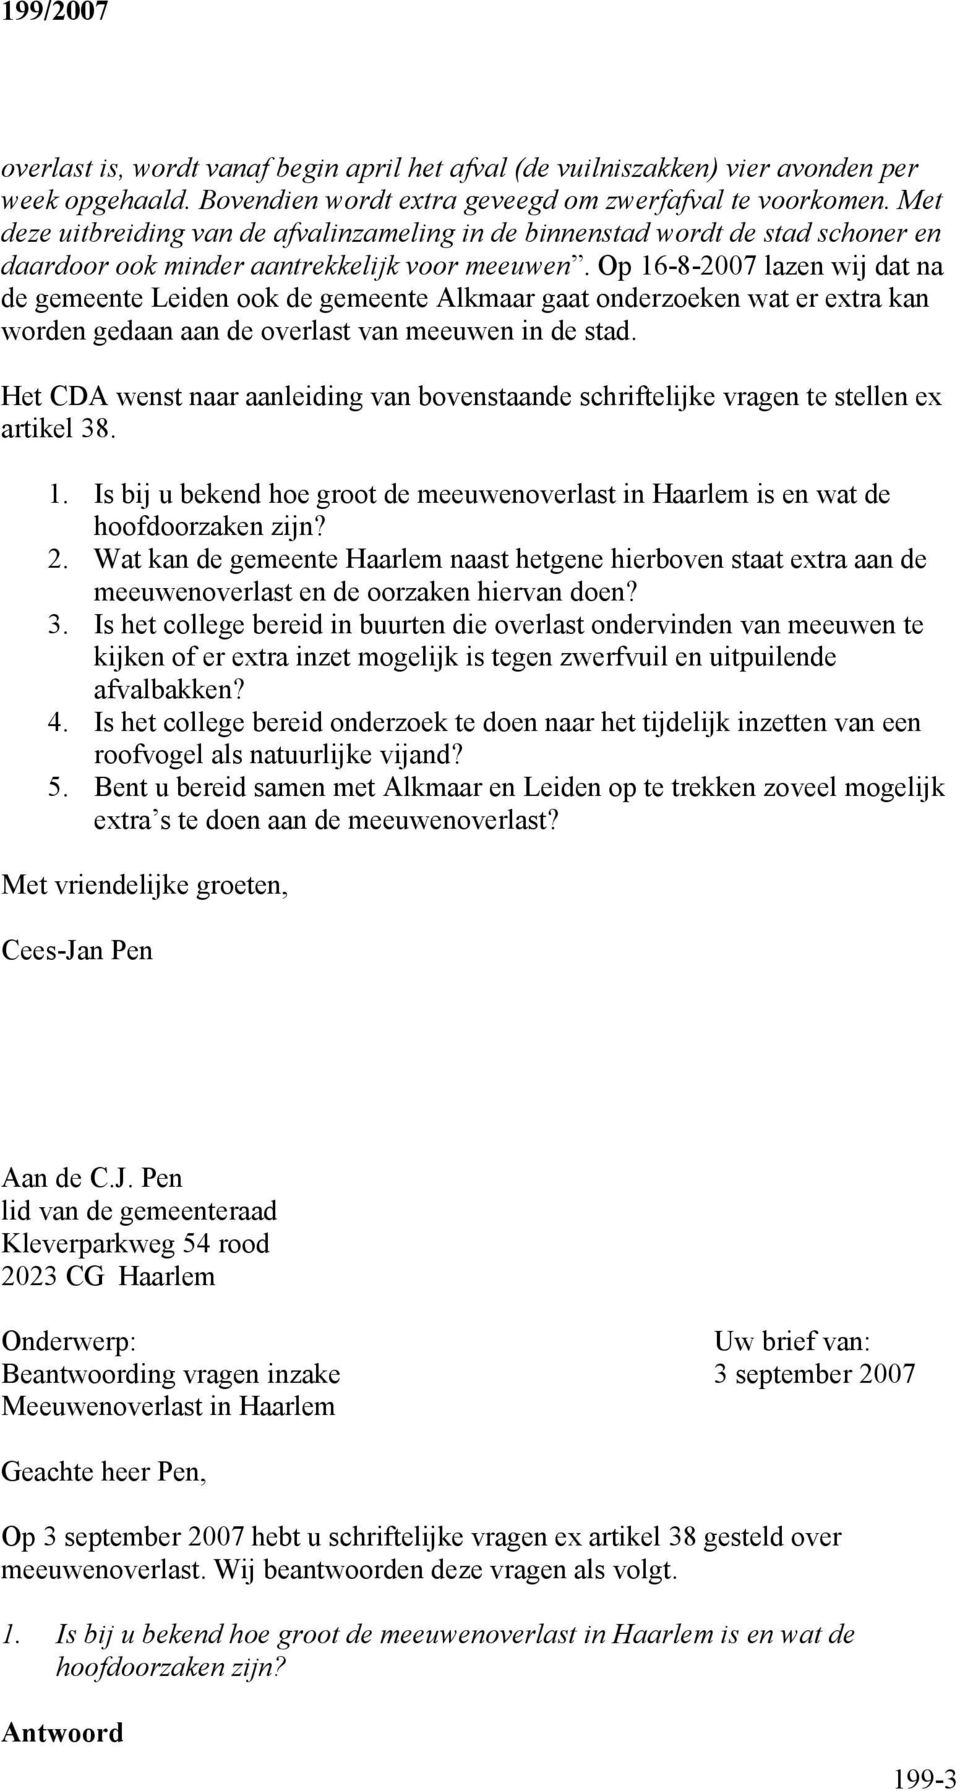 Op 16-8-2007 lazen wij dat na de gemeente Leiden ook de gemeente Alkmaar gaat onderzoeken wat er extra kan worden gedaan aan de overlast van meeuwen in de stad.